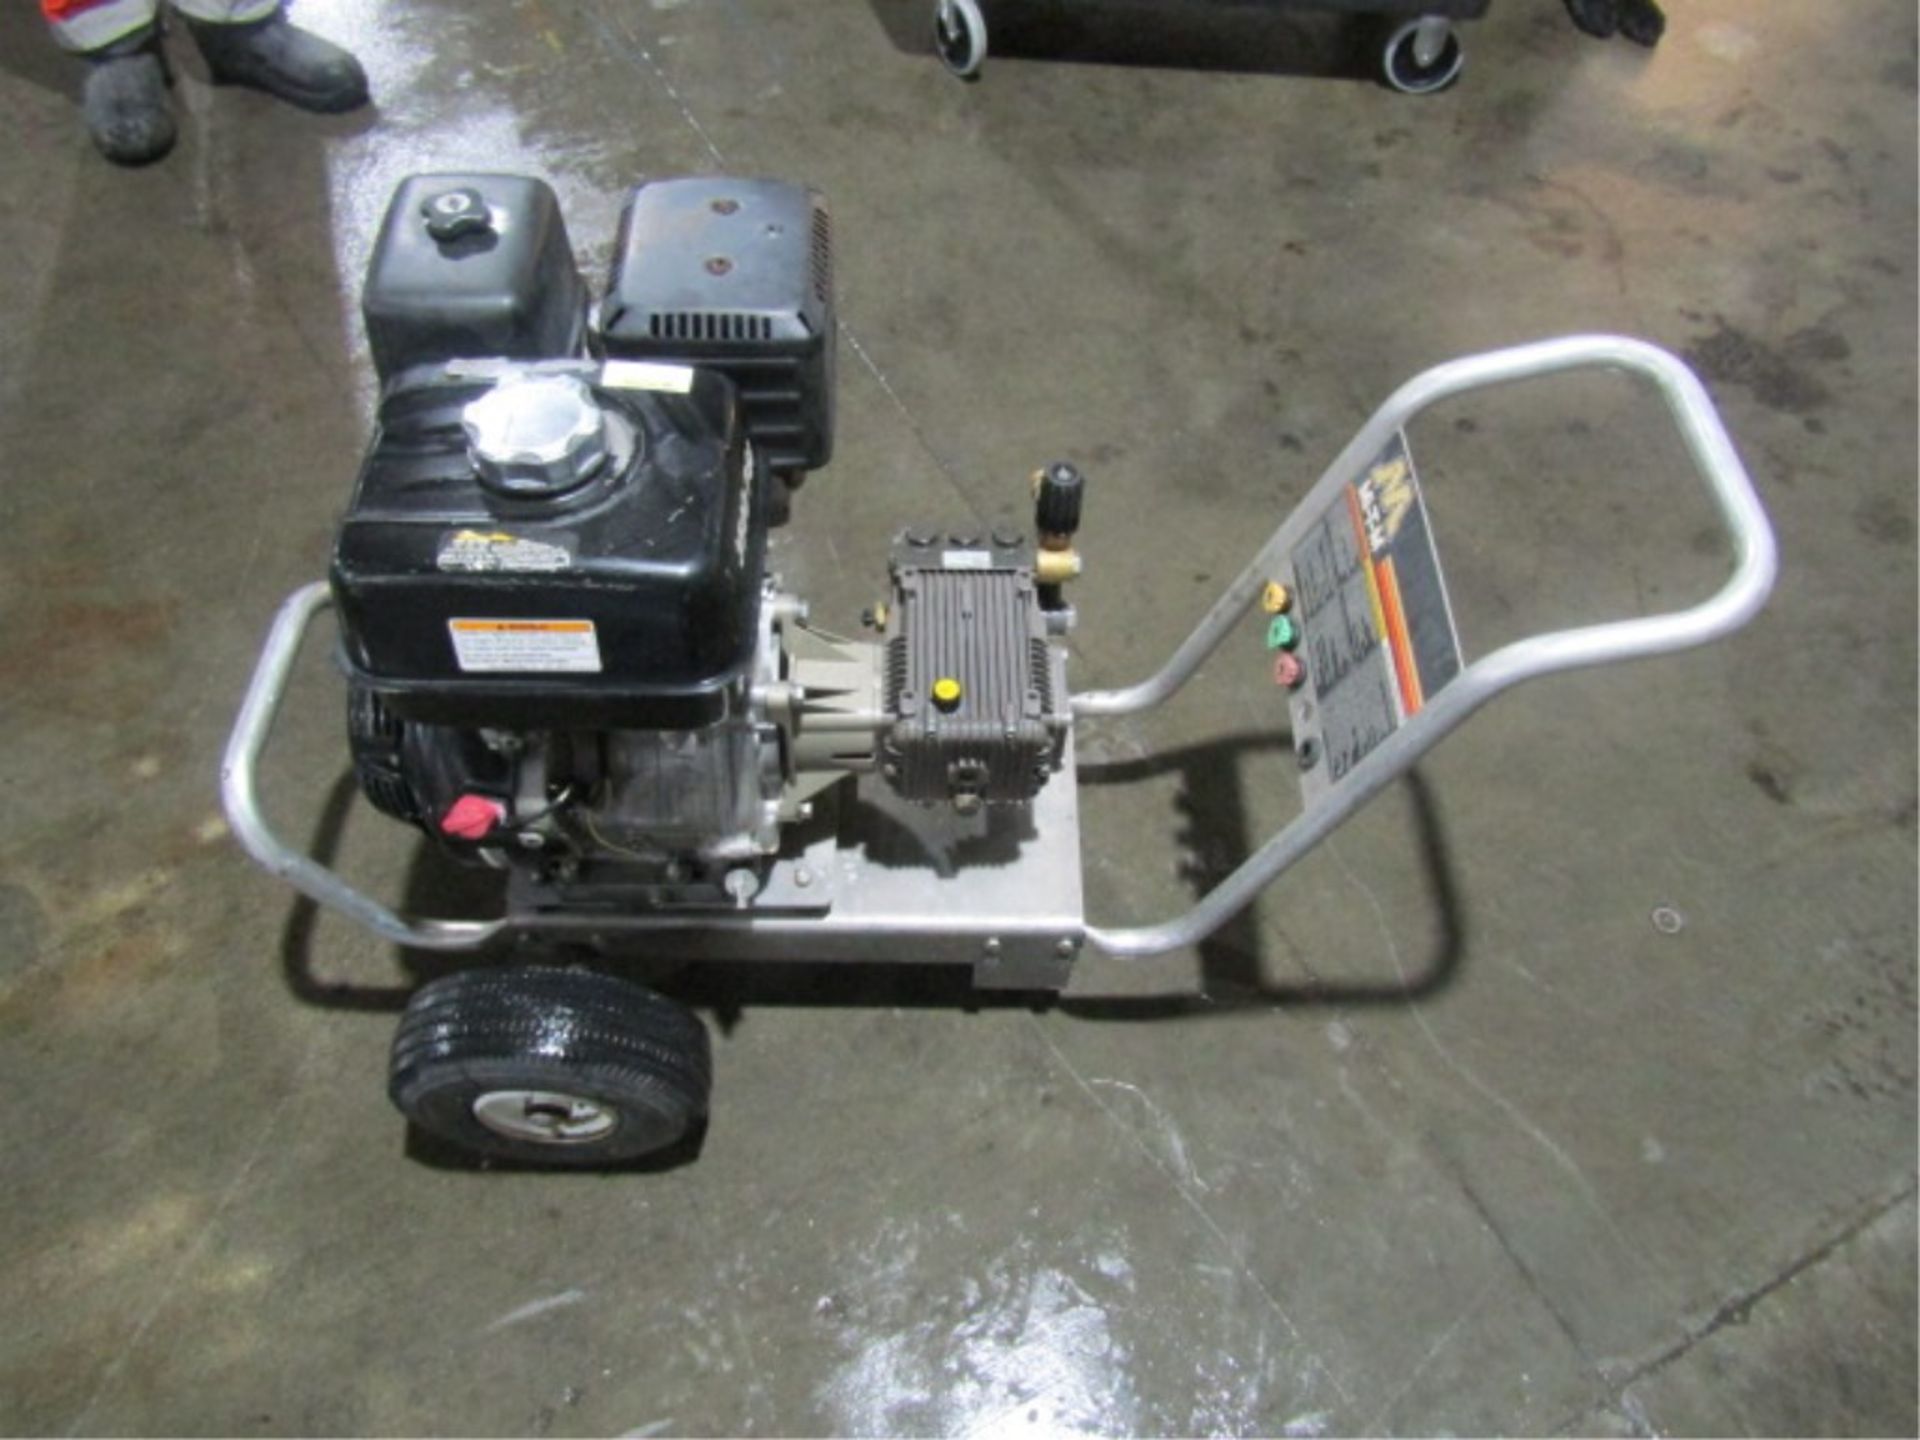 MTM CA-3504-0M4B Pressure Washer, Honda GX390, 3500 PSI, Serial #10536812 - Image 5 of 7